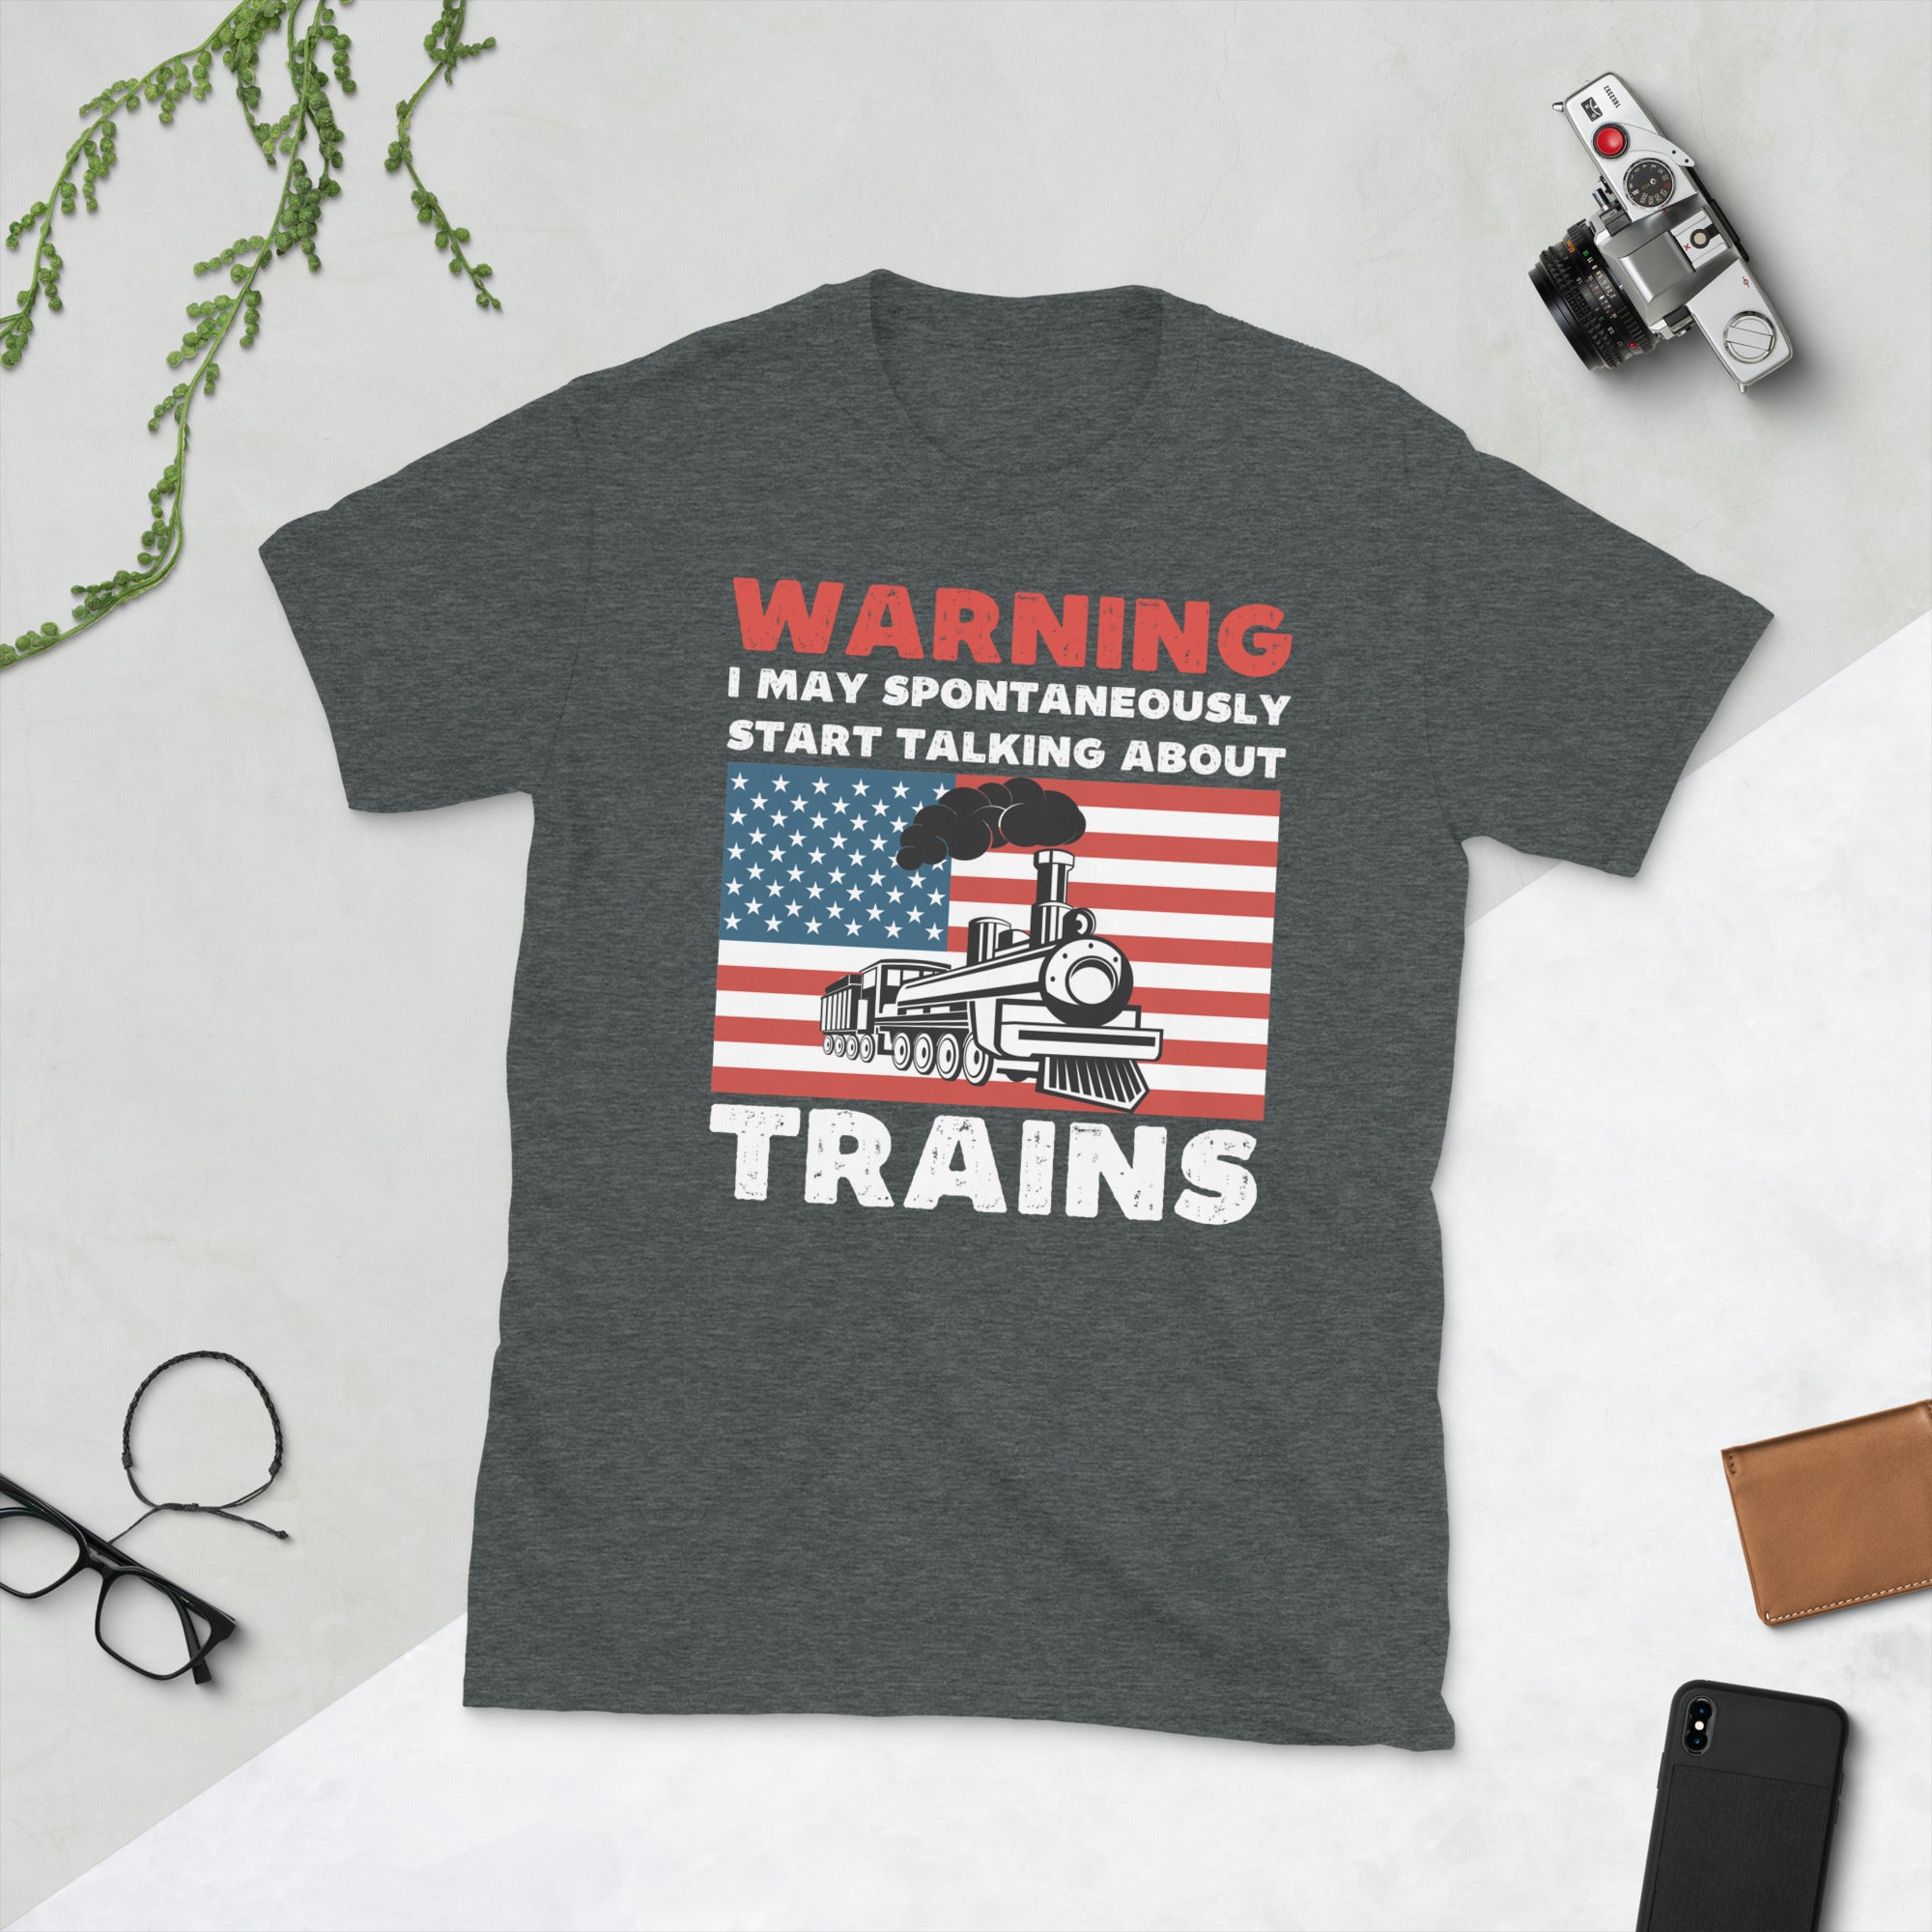 Advertencia puede empezar a hablar de camiseta de trenes, camisa de ingeniero de trenes, regalos de locomotora modelo de tren, camiseta divertida de ferrocarril, camiseta de tren vintage